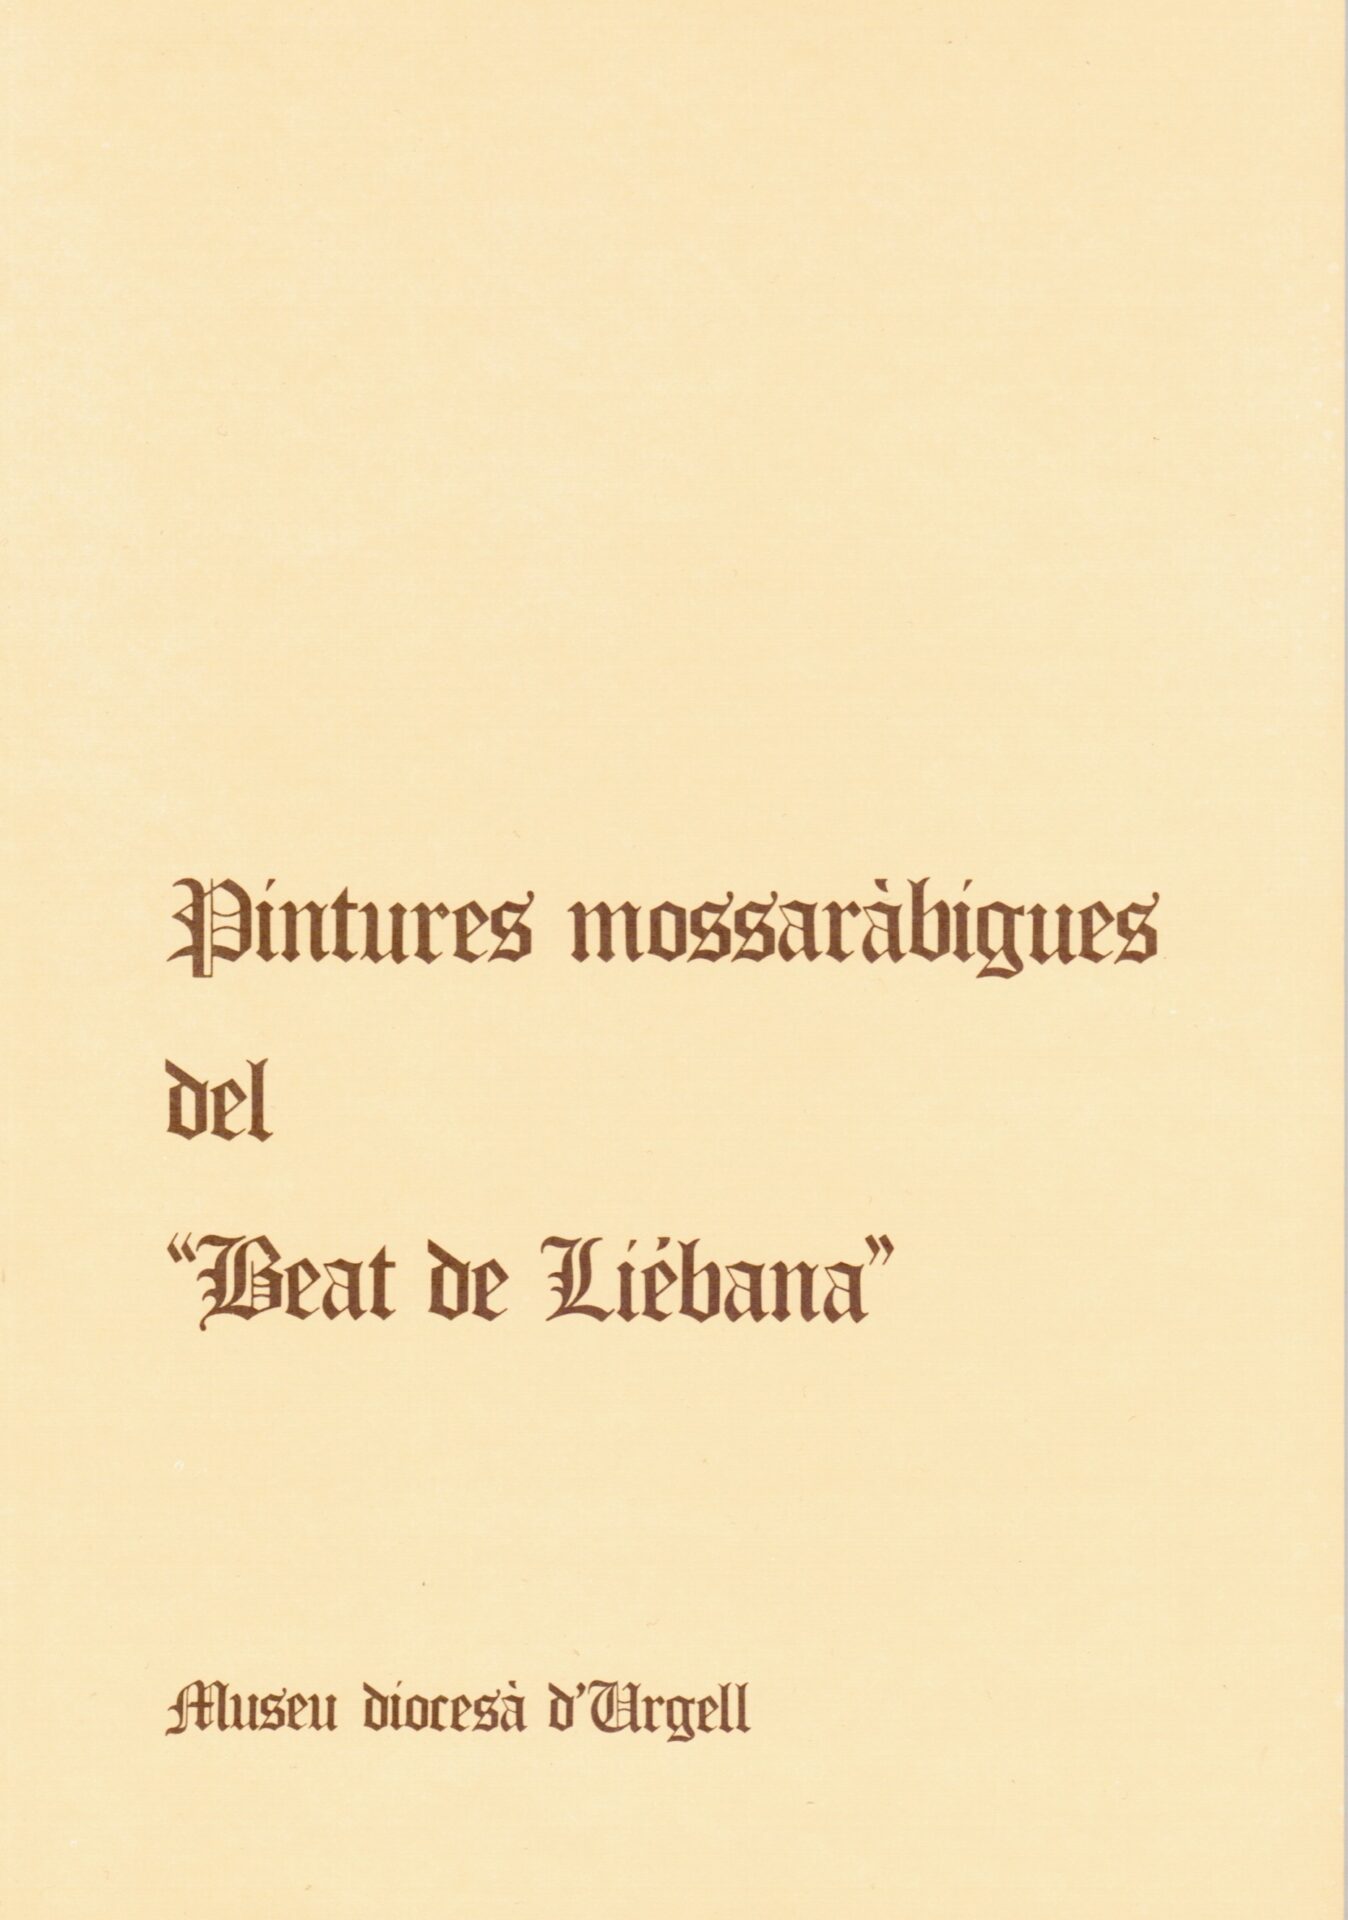 Llibre les pintures mossaràbigues del beat de liebana